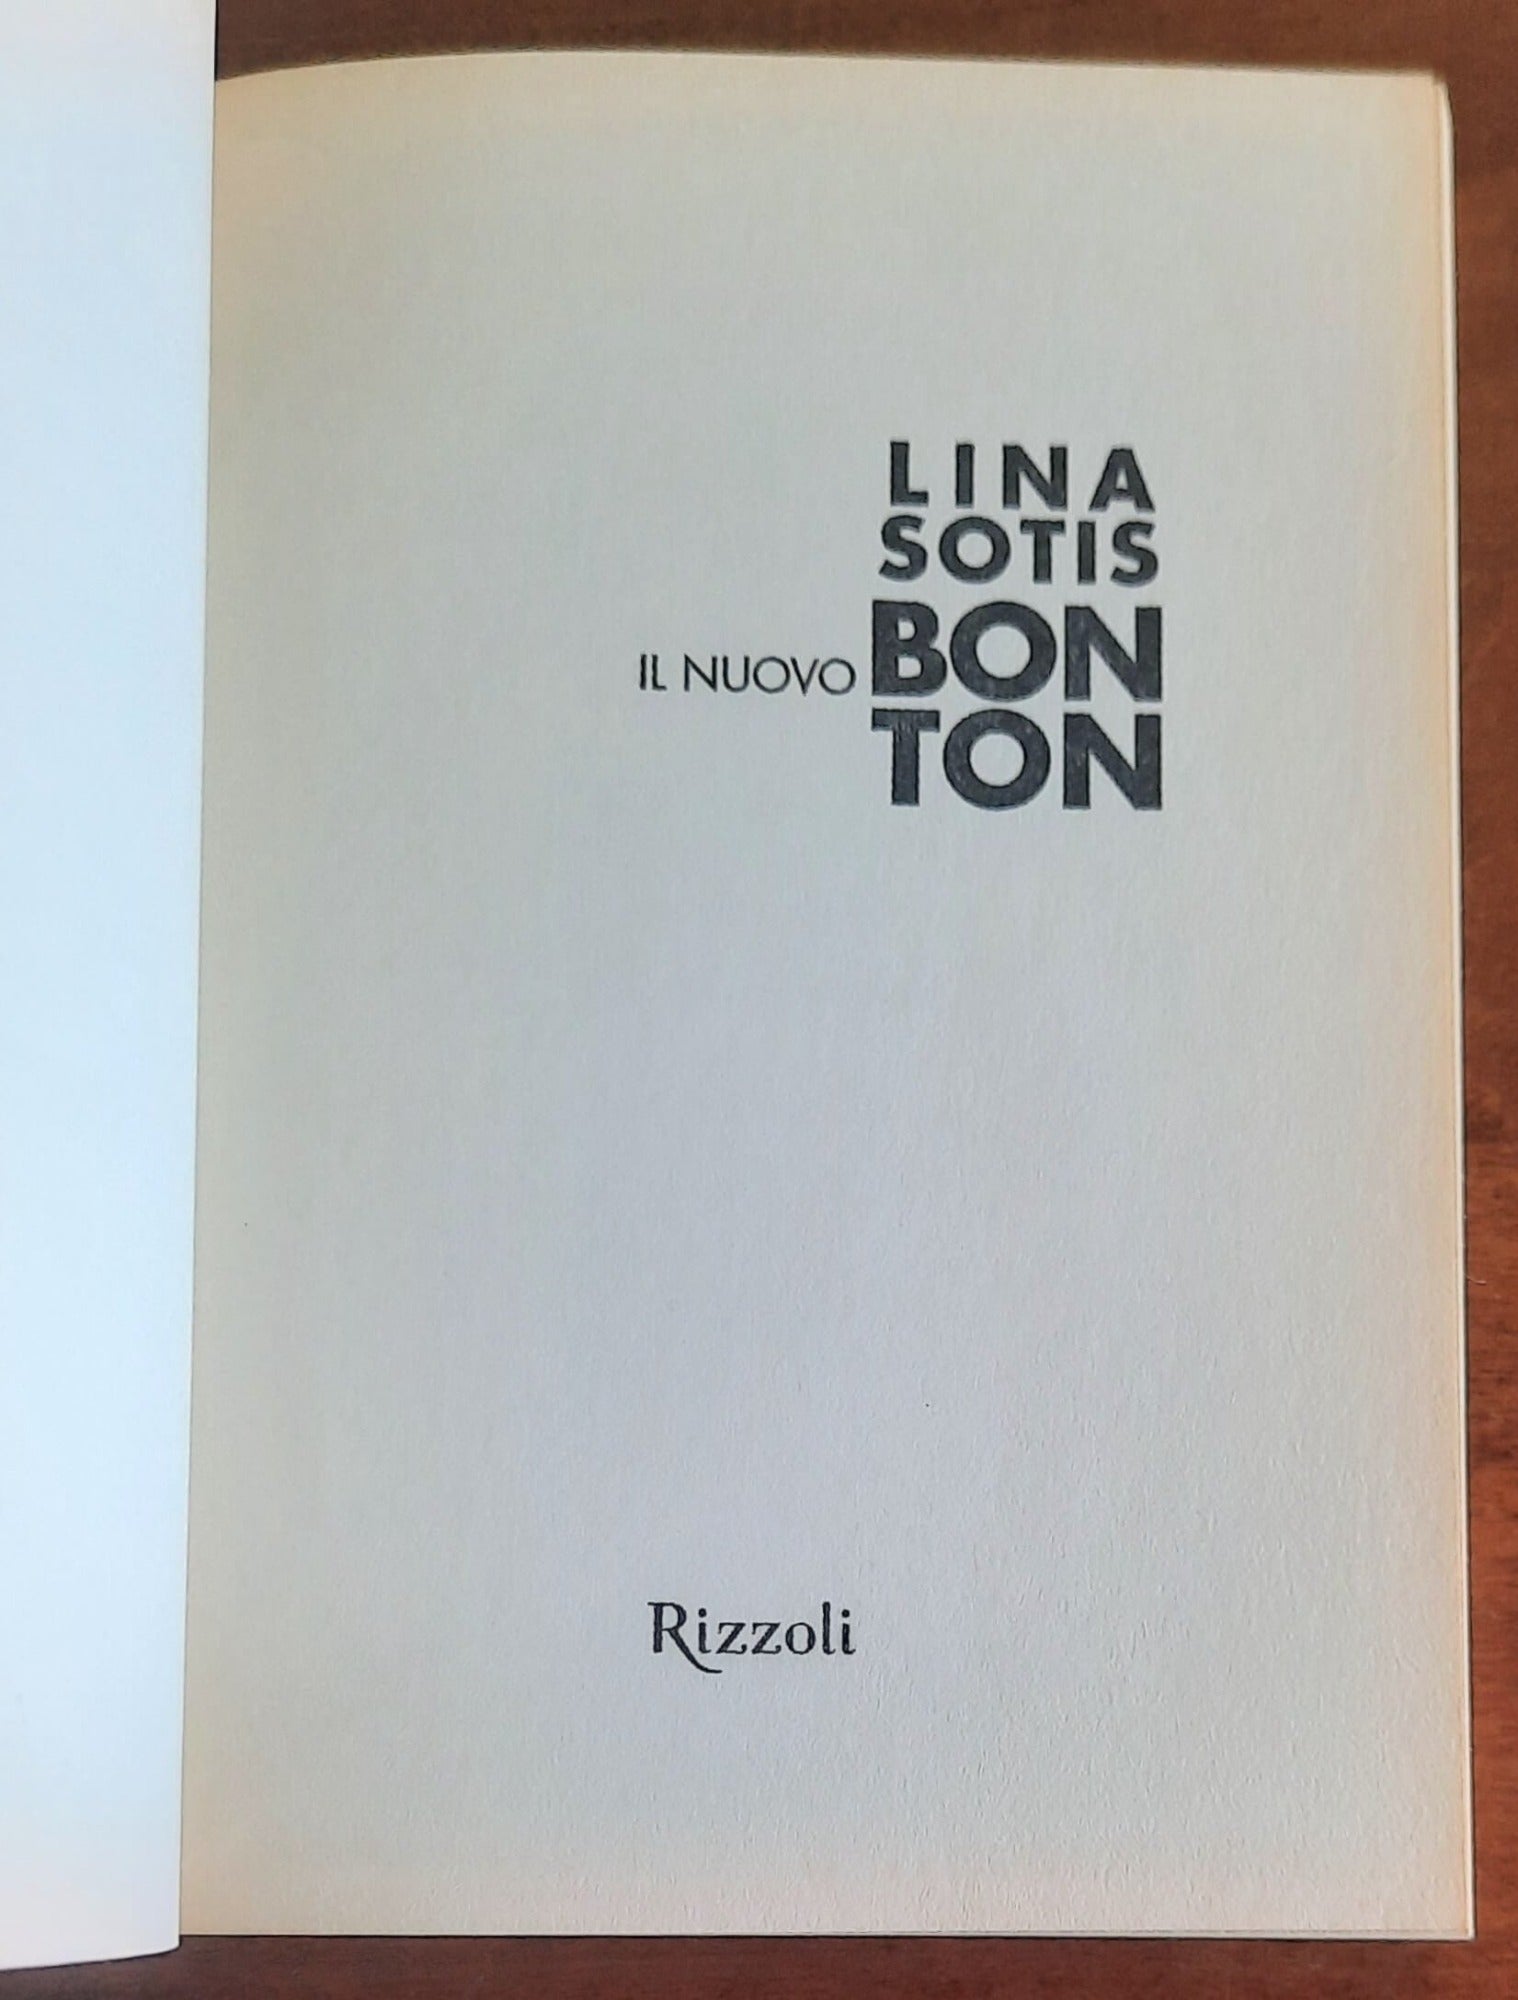 Il nuovo bon ton - Lina Sotis - Rizzoli